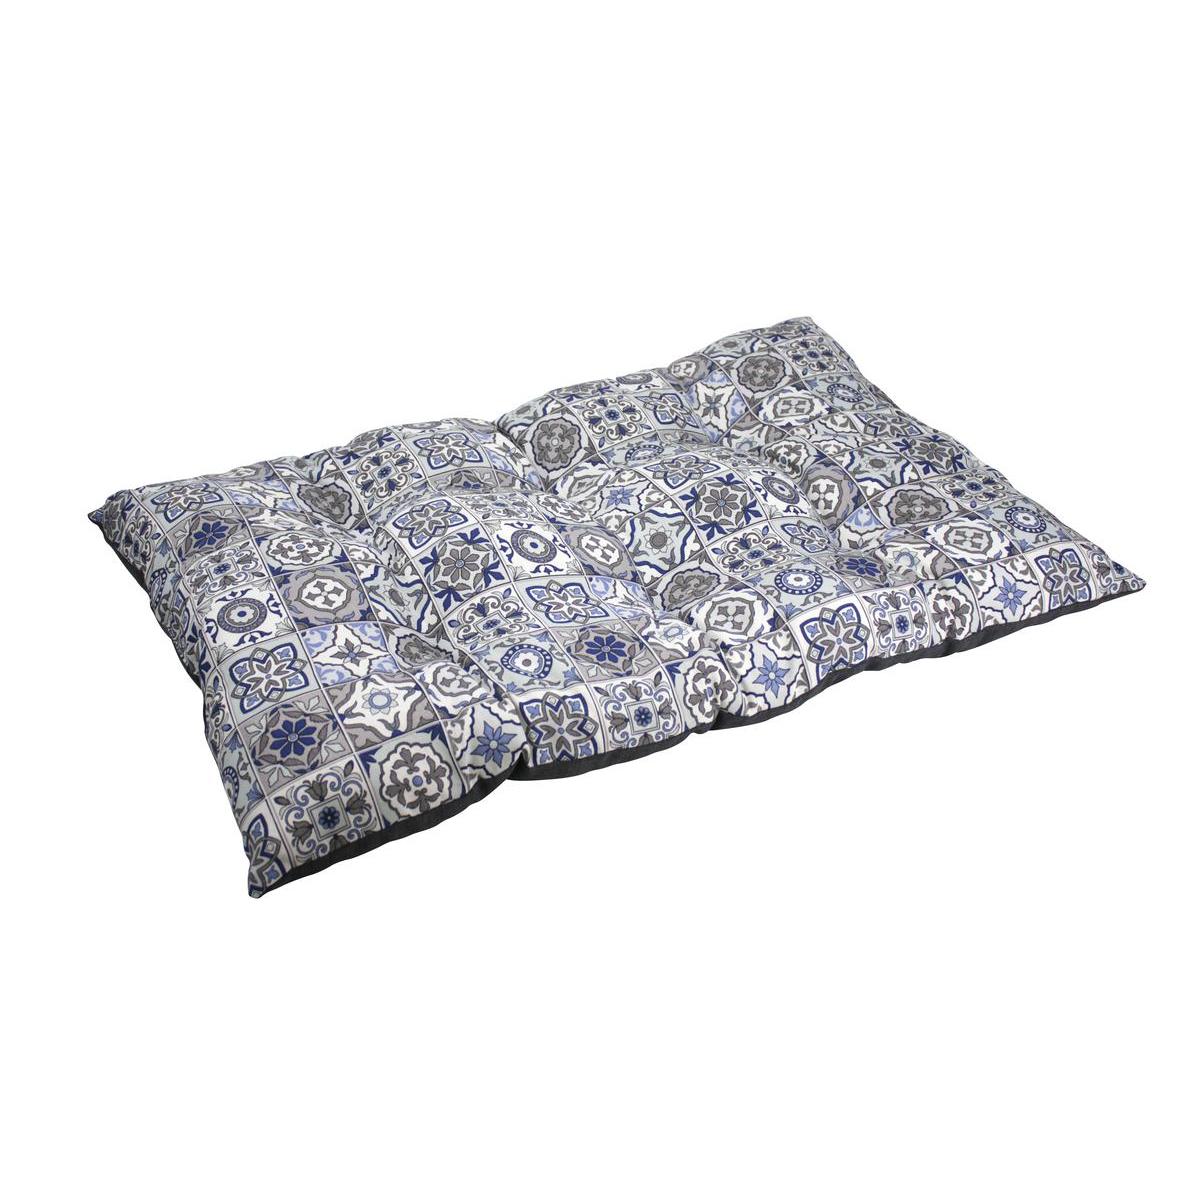 Matelas bombé réversible motifs carreaux de ciment - 90 x 55 x 15 cm - Différents modèles - Bleu, gris